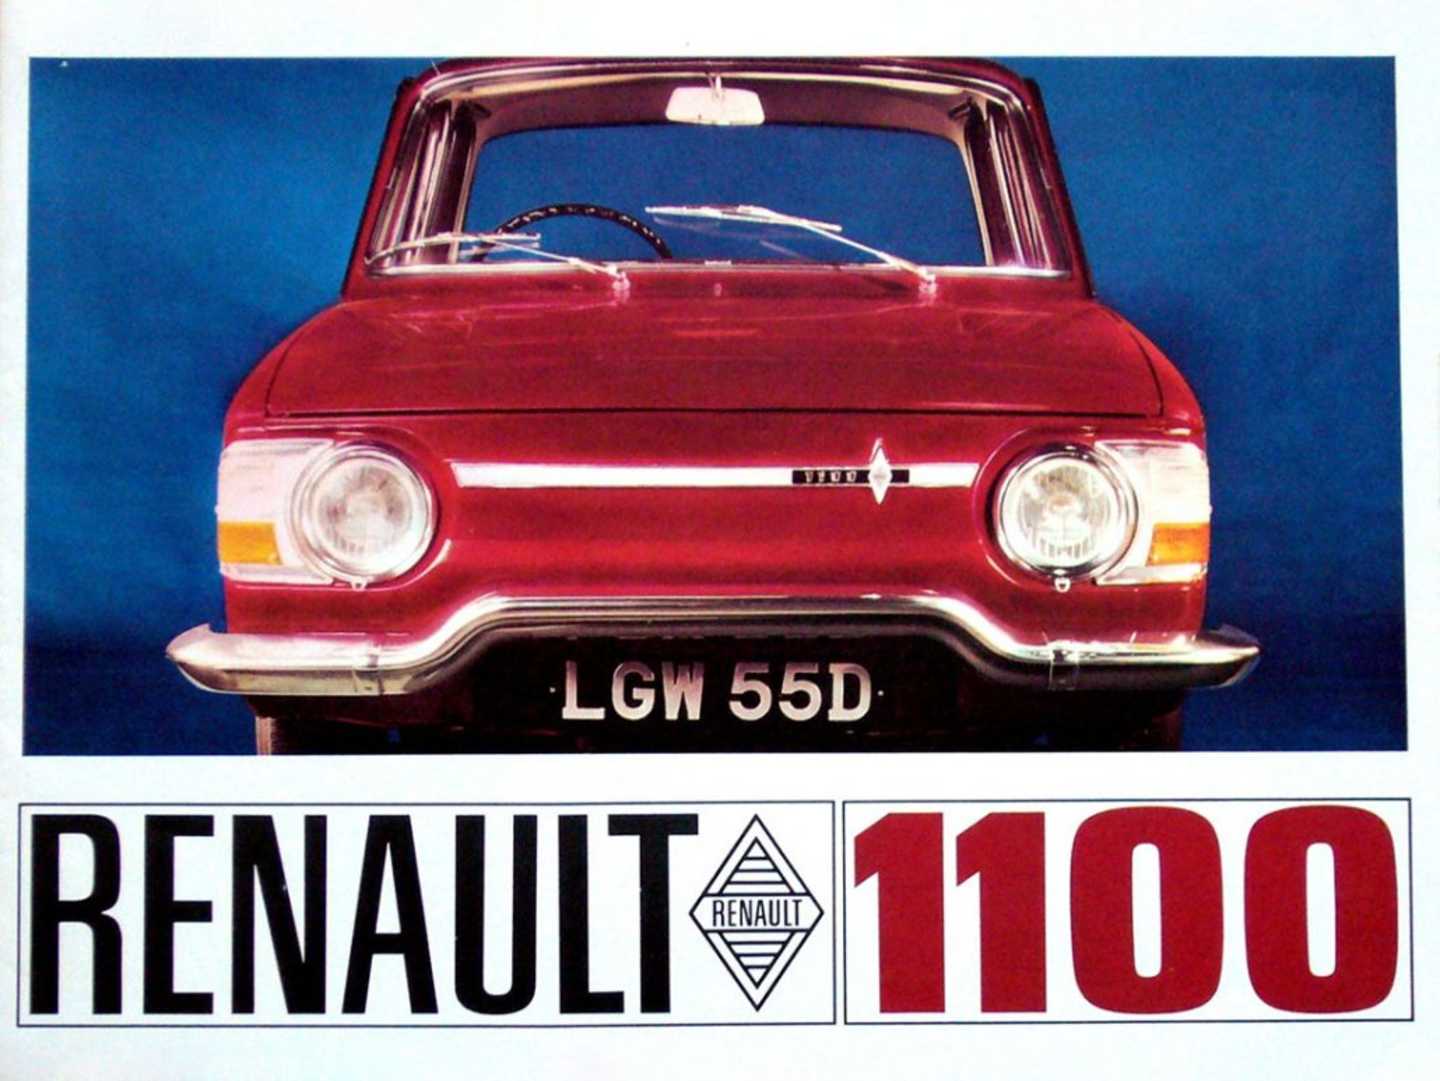 Affiche de pub pour la Renault 1100